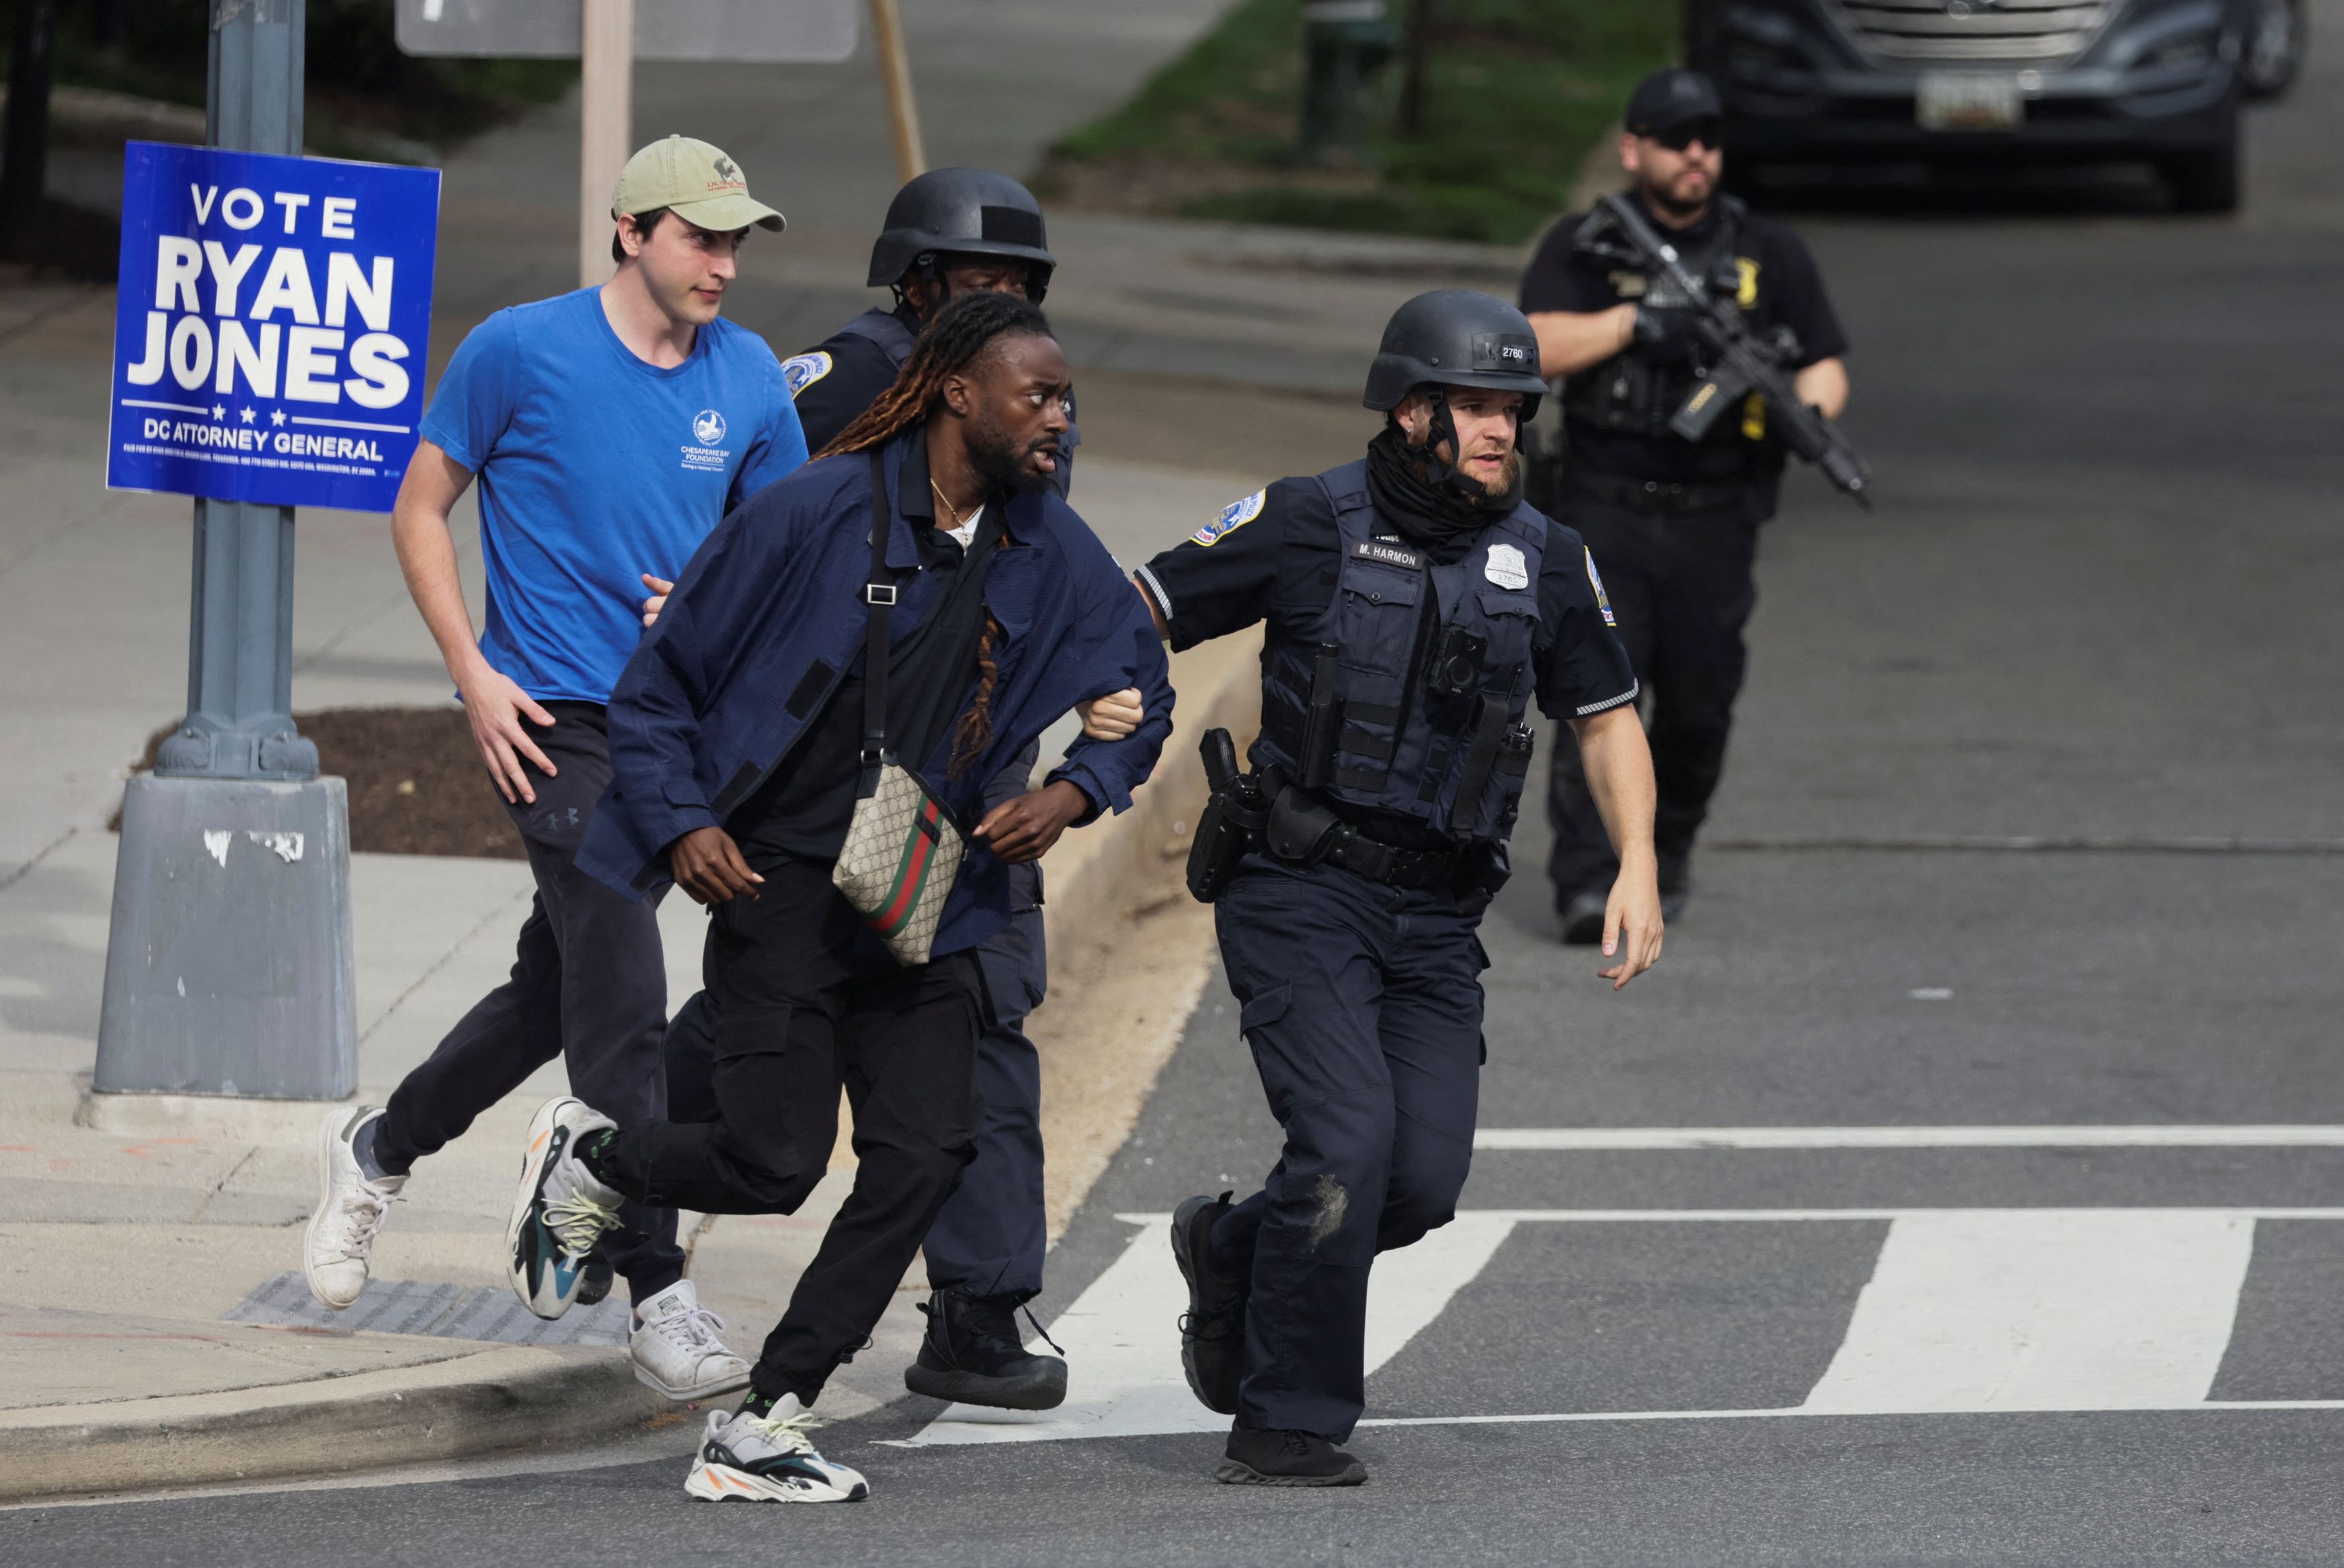 Agentes de la policía ayudan a civiles a evacuar tras un tiroteo en EEUU (REUTERS / Evelyn Hockstein)